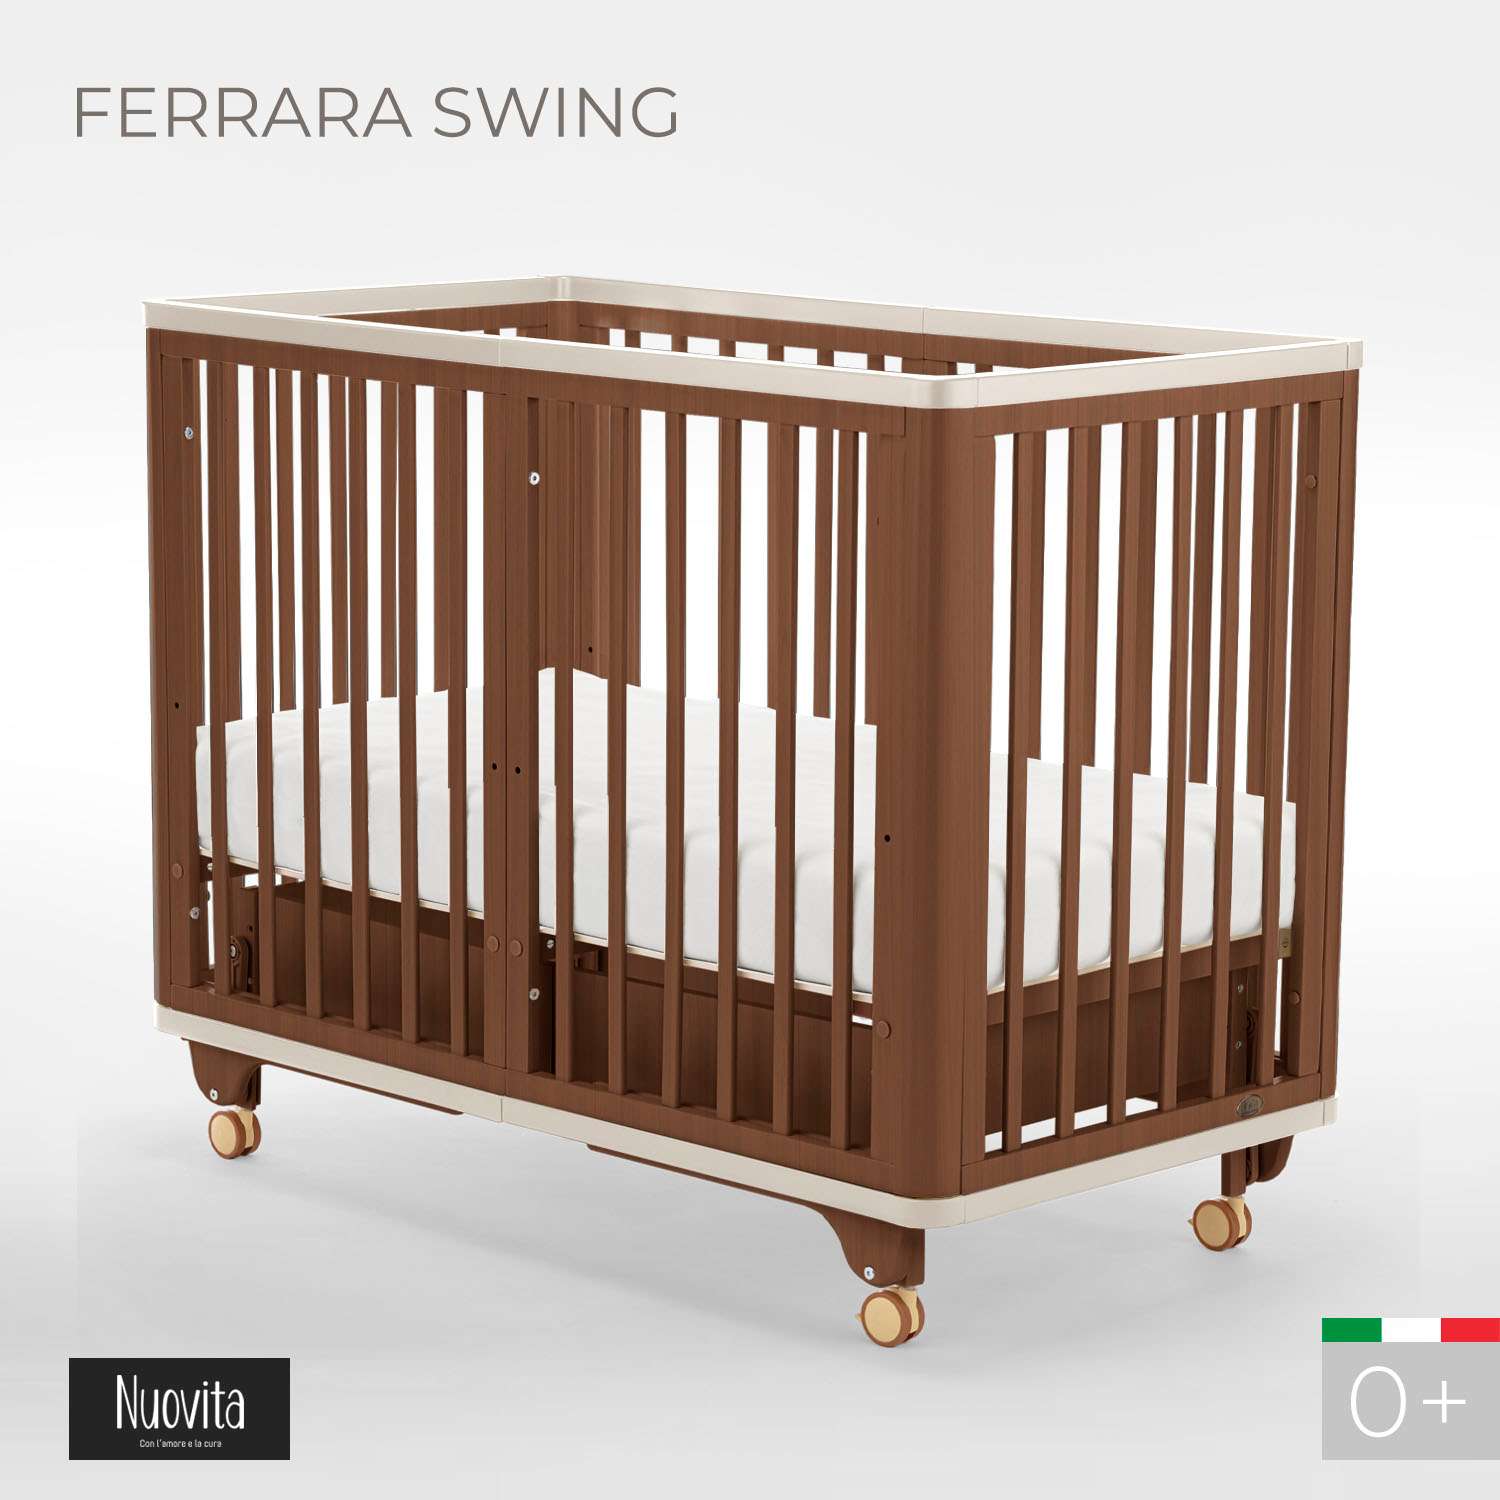 Детская кроватка Nuovita Ferrara swing прямоугольная, продольный маятник (темный орех) - фото 2